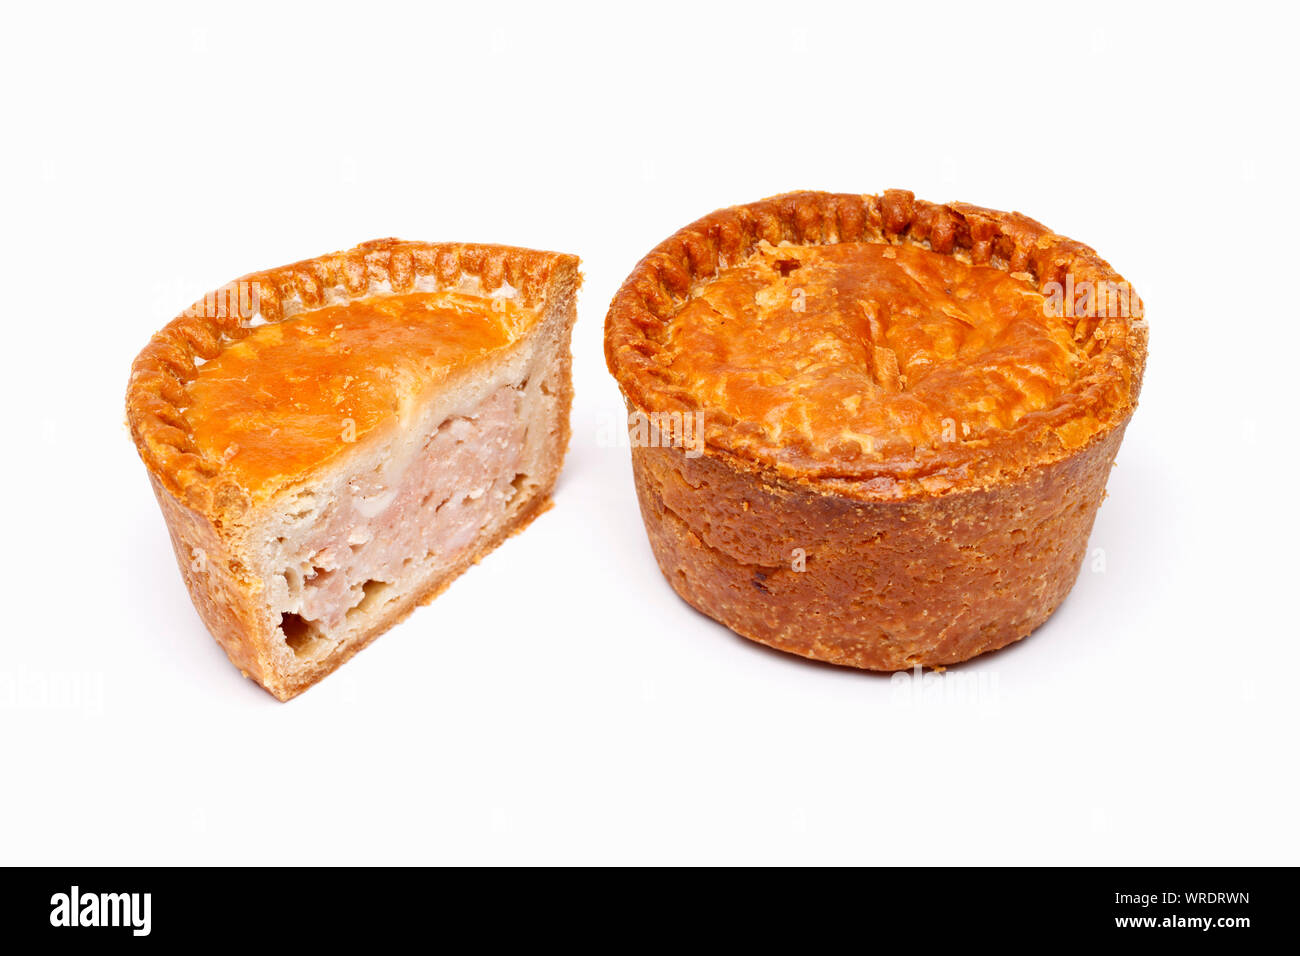 Pastel de Carne de cerdo tradicional británico, enteras y cortadas por la mitad mostrando el interior Foto de stock